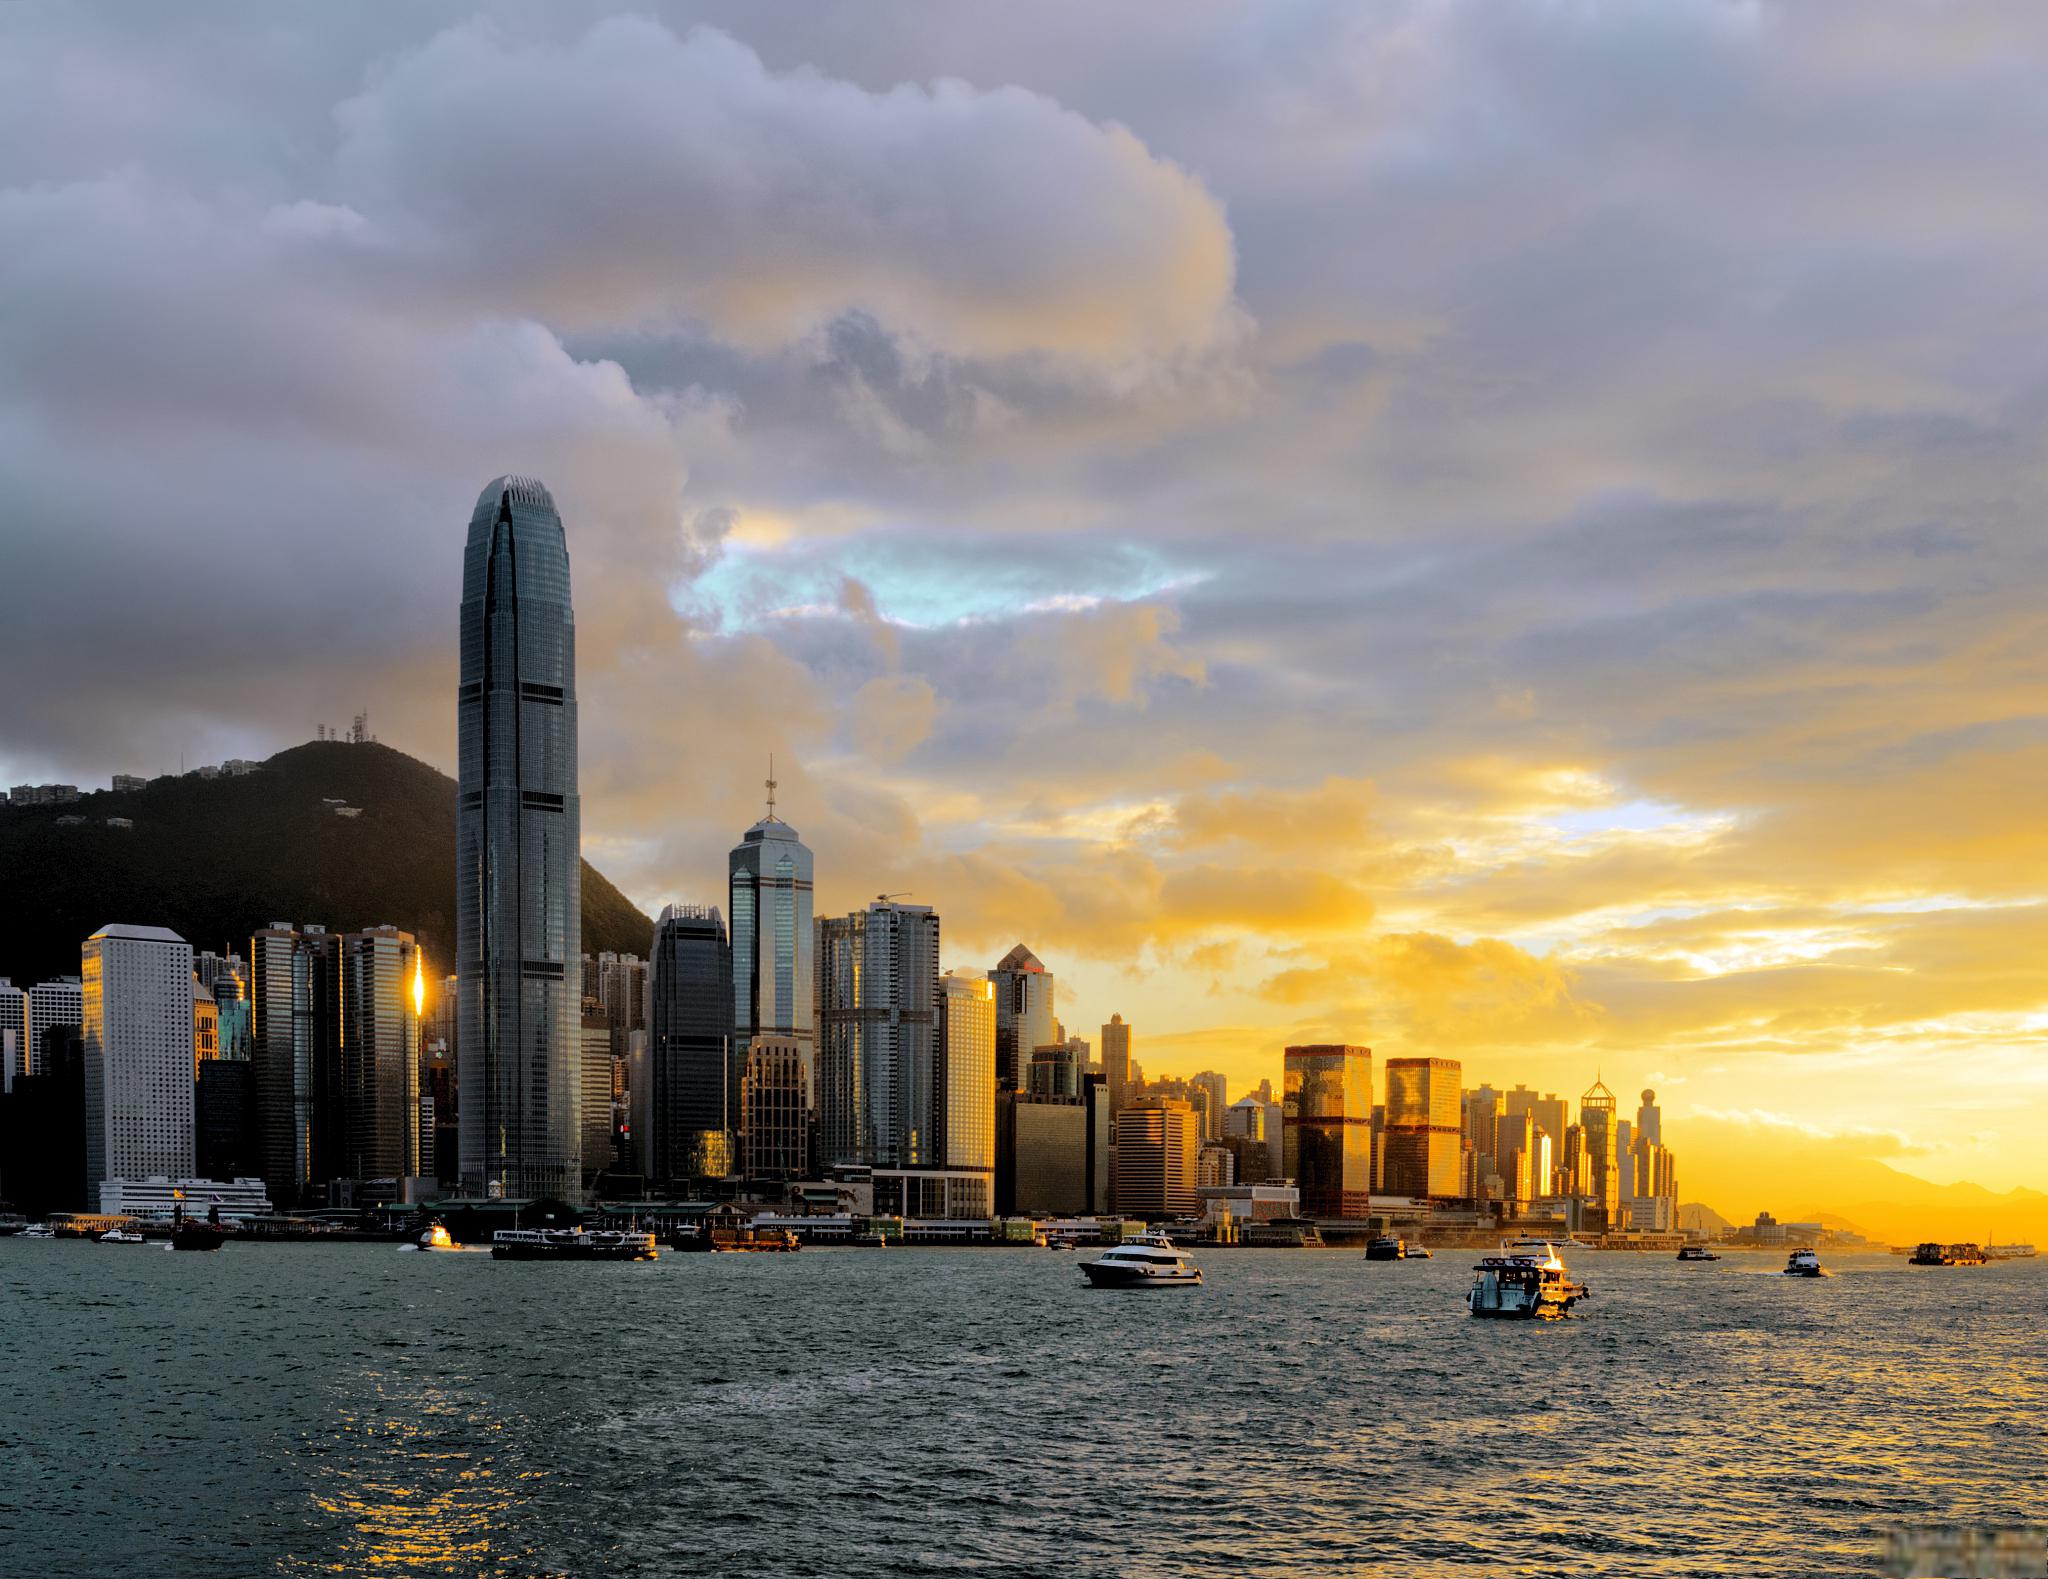 香港旅游景点推荐 香港是一个充满活力和魅力的城市,拥有许多著名的